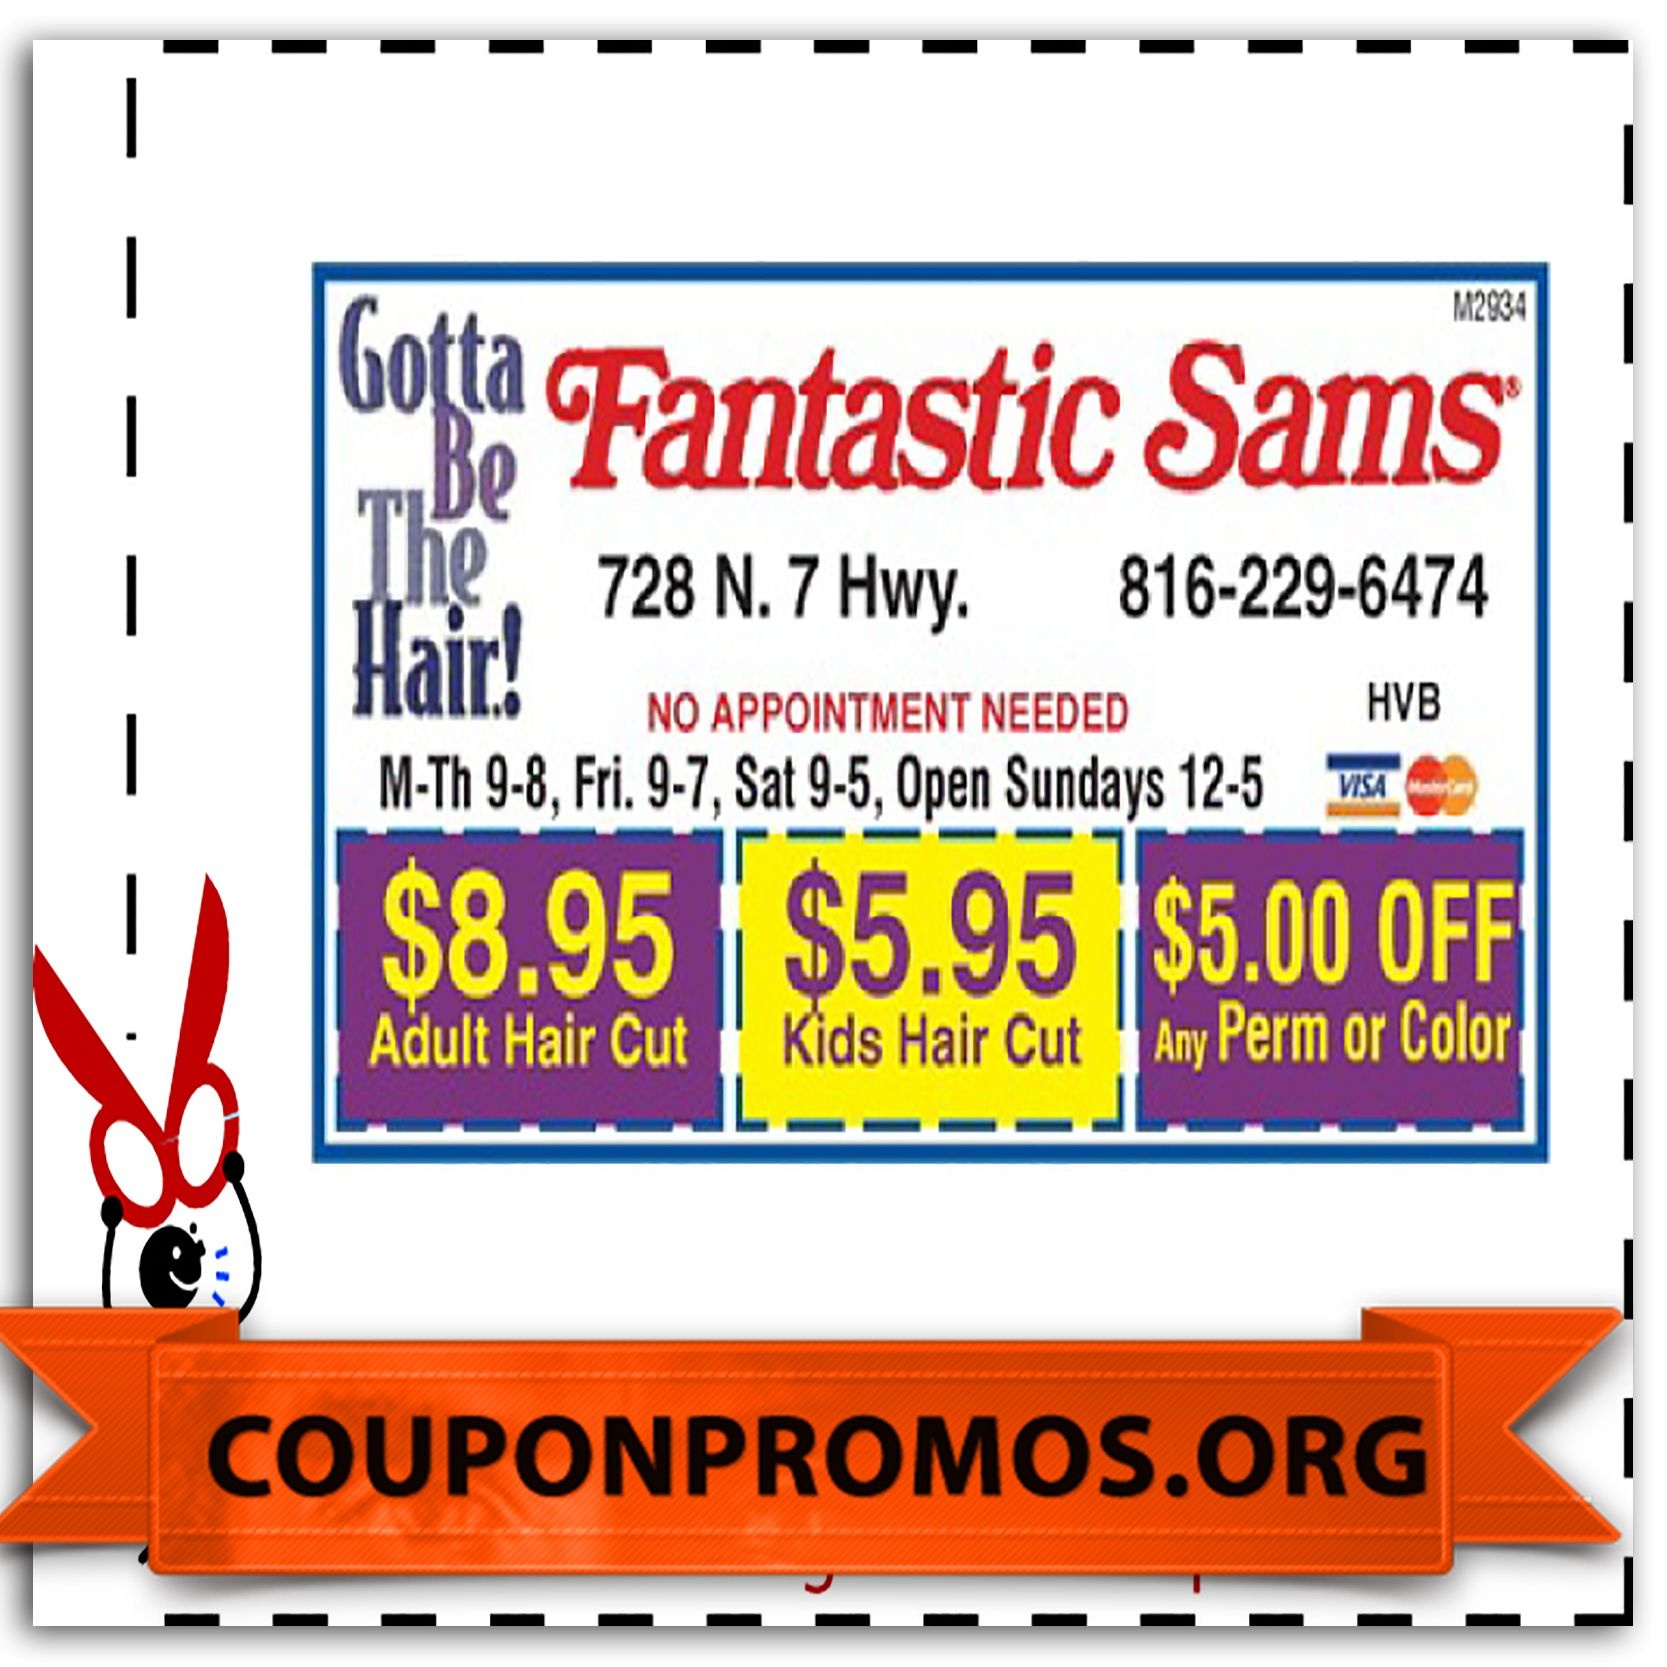 Printable Fantastic Sams Coupons For January | January Coupons 2015 - Free Printable Coupons For Fantastic Sams